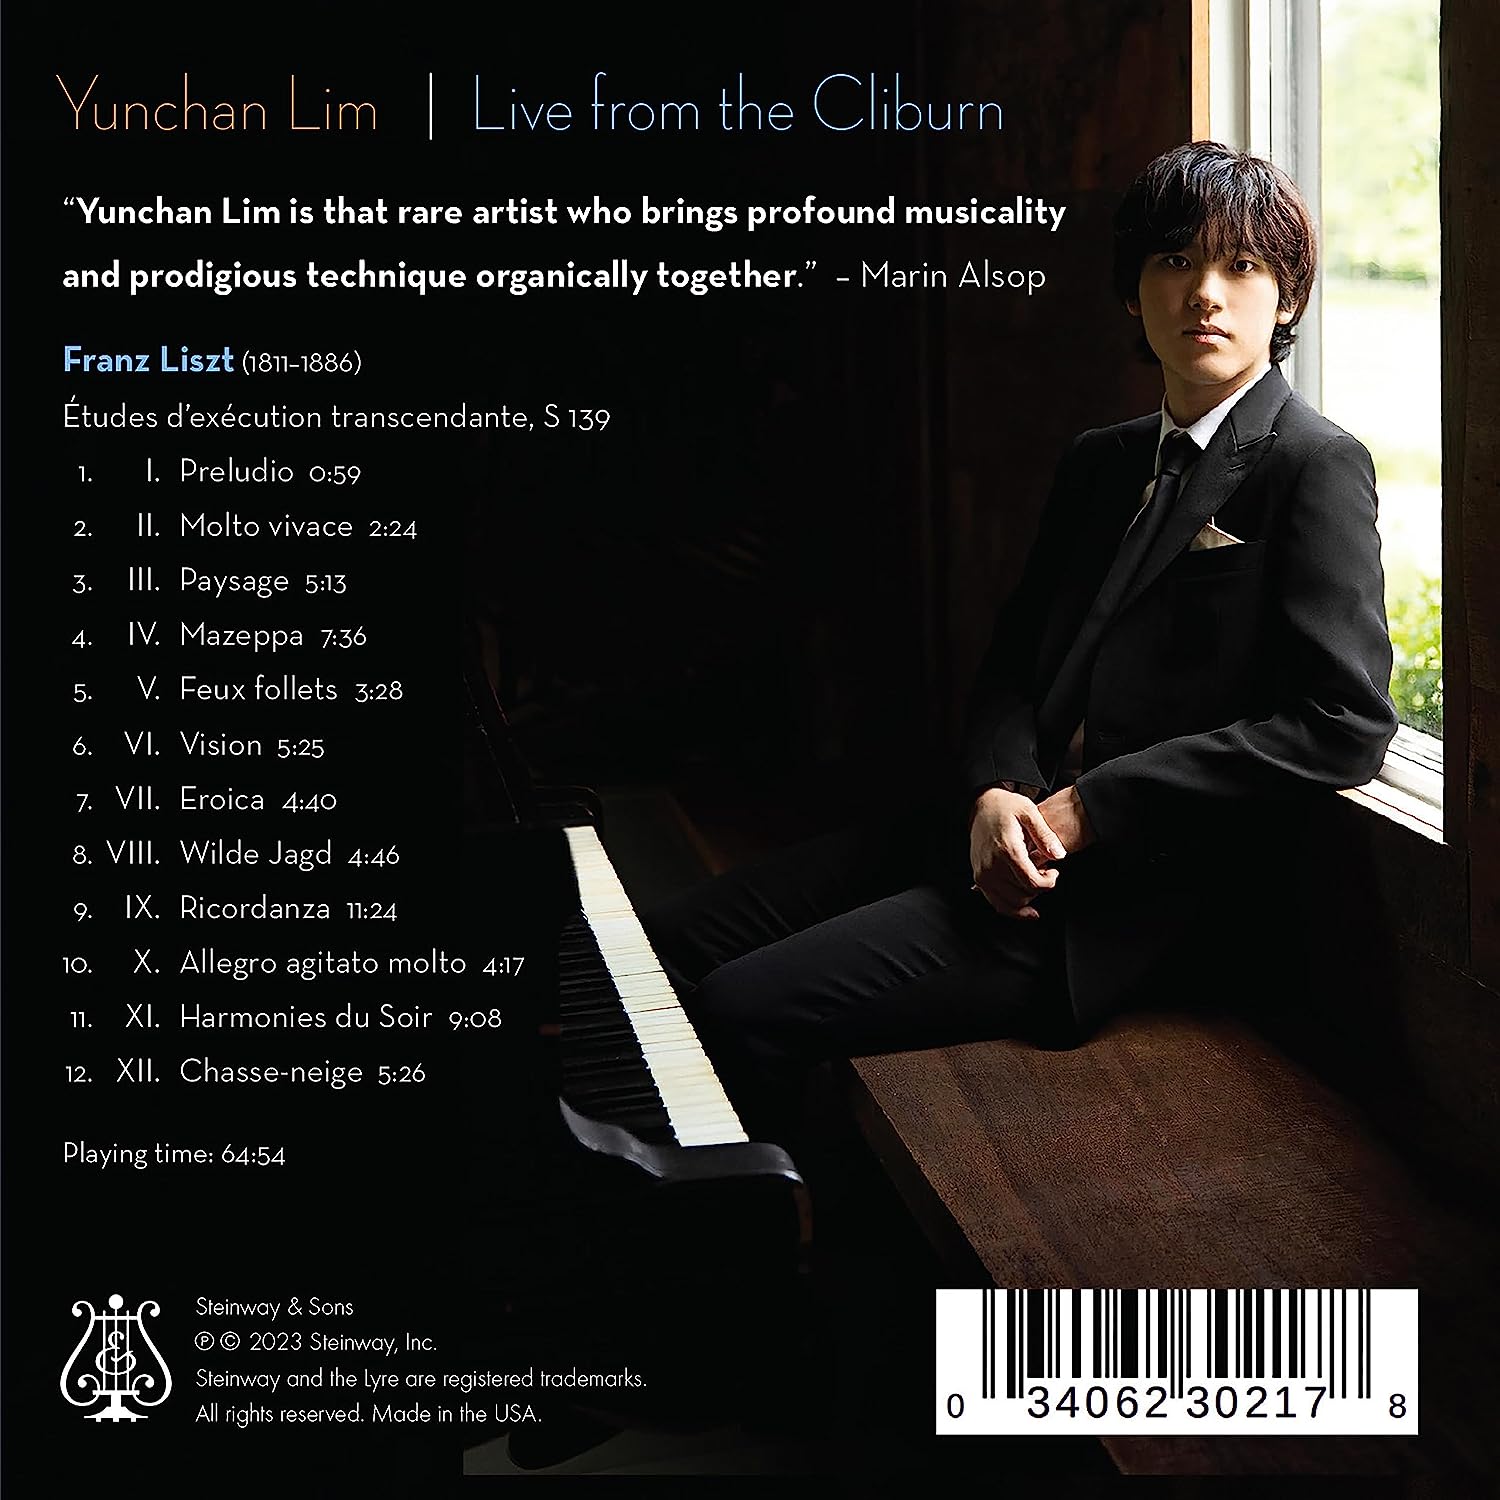 임윤찬 - 리스트: 초절기교 연습곡 [반 클라이번 콩쿠르 실황 녹음] (Yunchan Lim Live from the Cliburn)